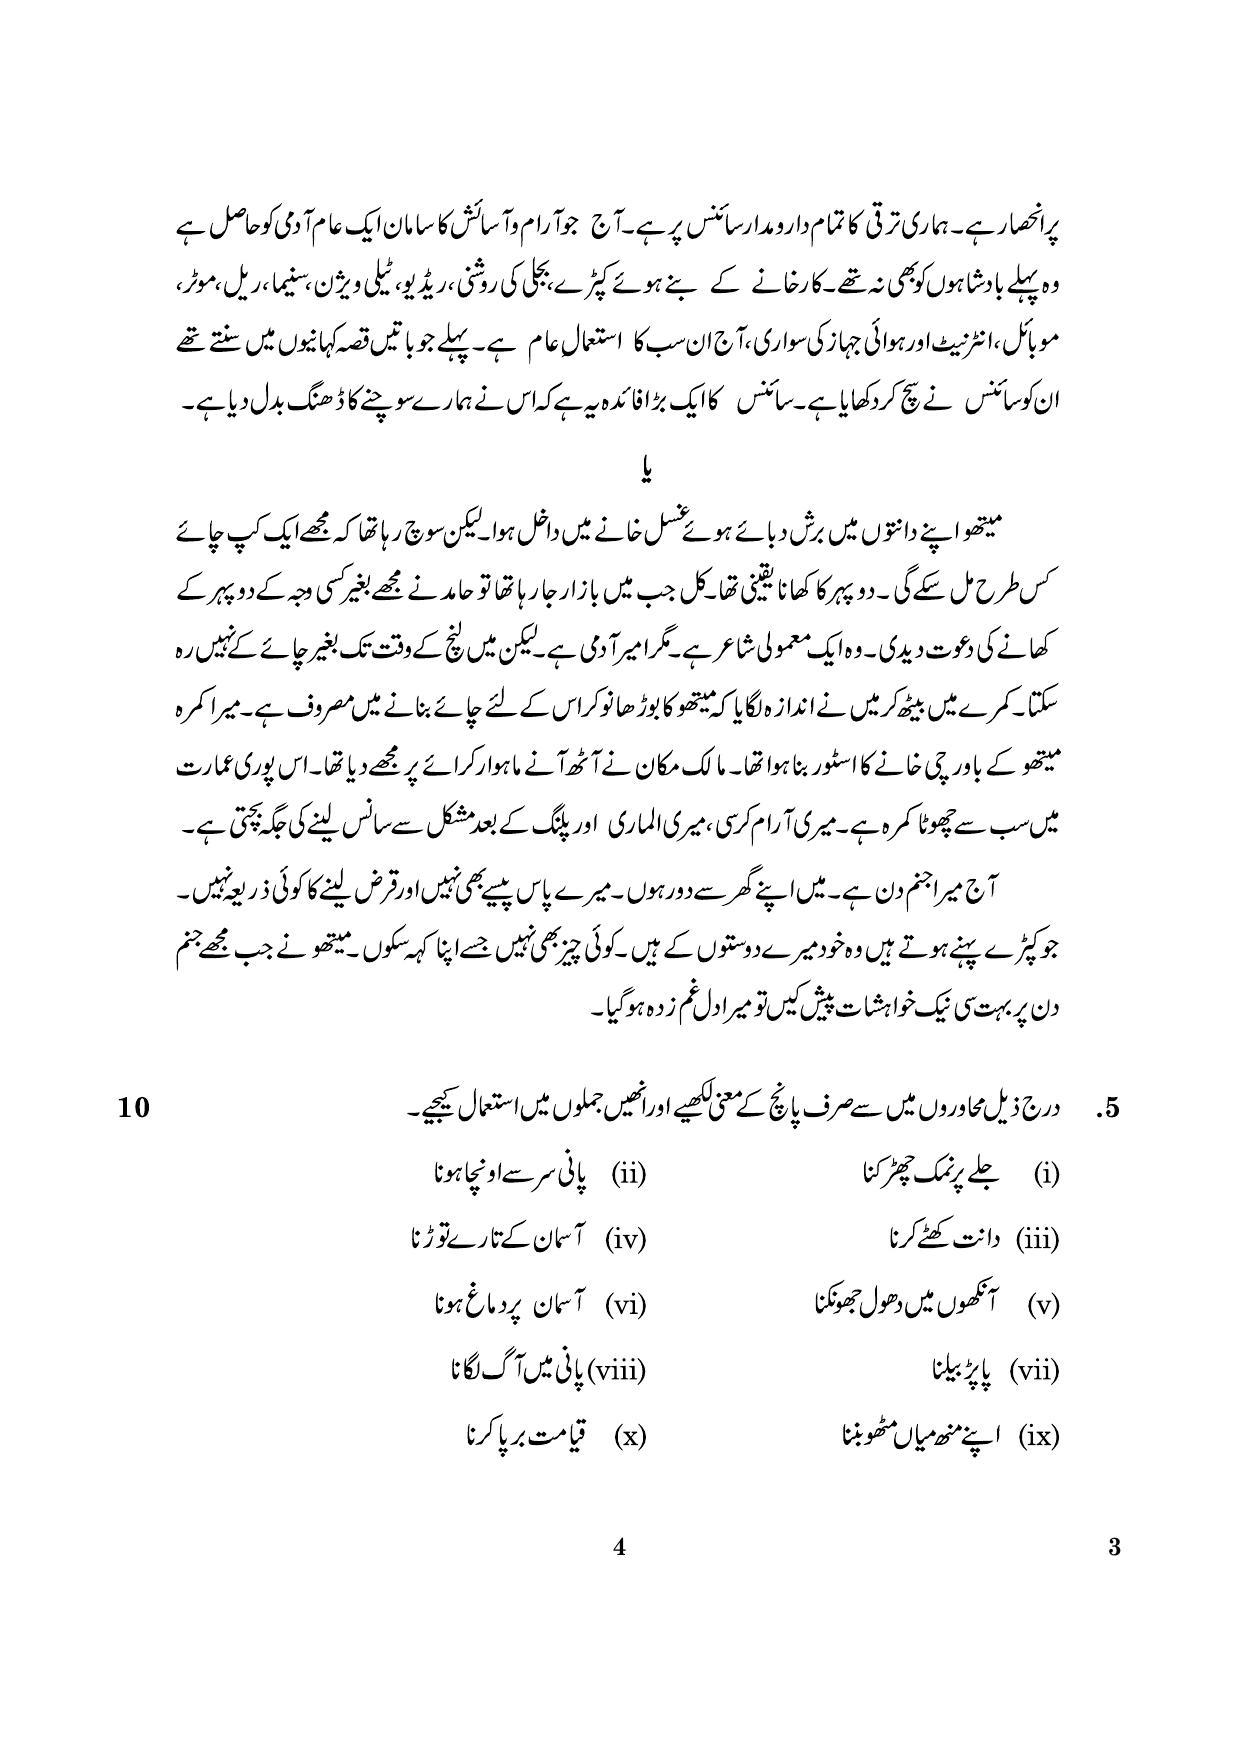 CBSE Class 12 003 Urdu Core 2016 Question Paper - Page 4